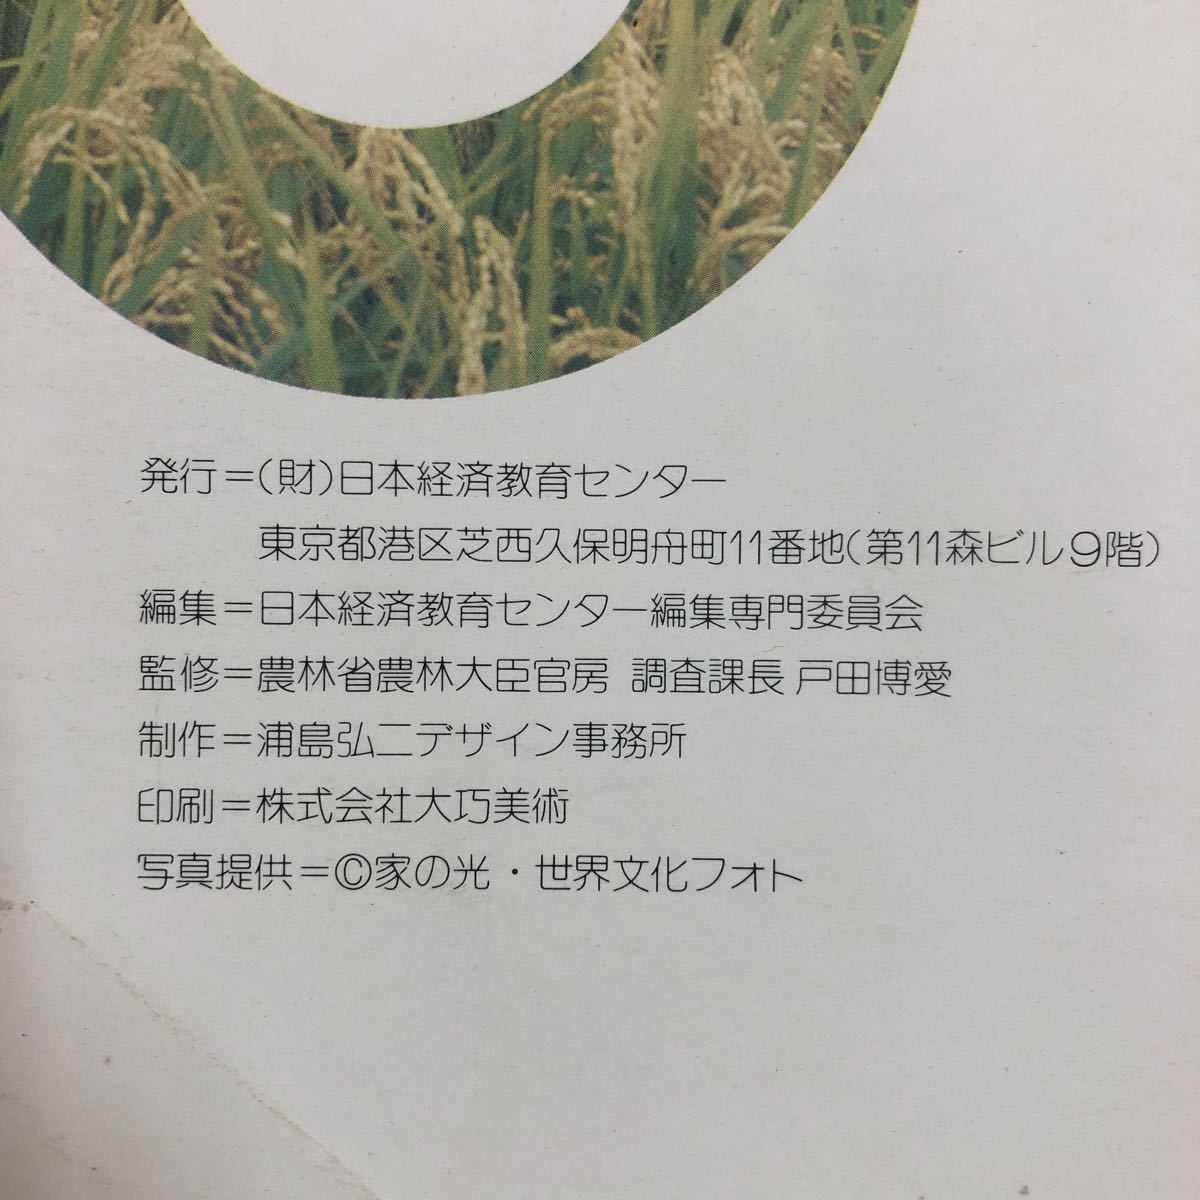 M6d-005 日本の農業 新しい農業の確立のために 発行日不明 日本経済教育センター 農業 課題 写真 資料 データ 農家 労働 農地 生産 発展_画像3